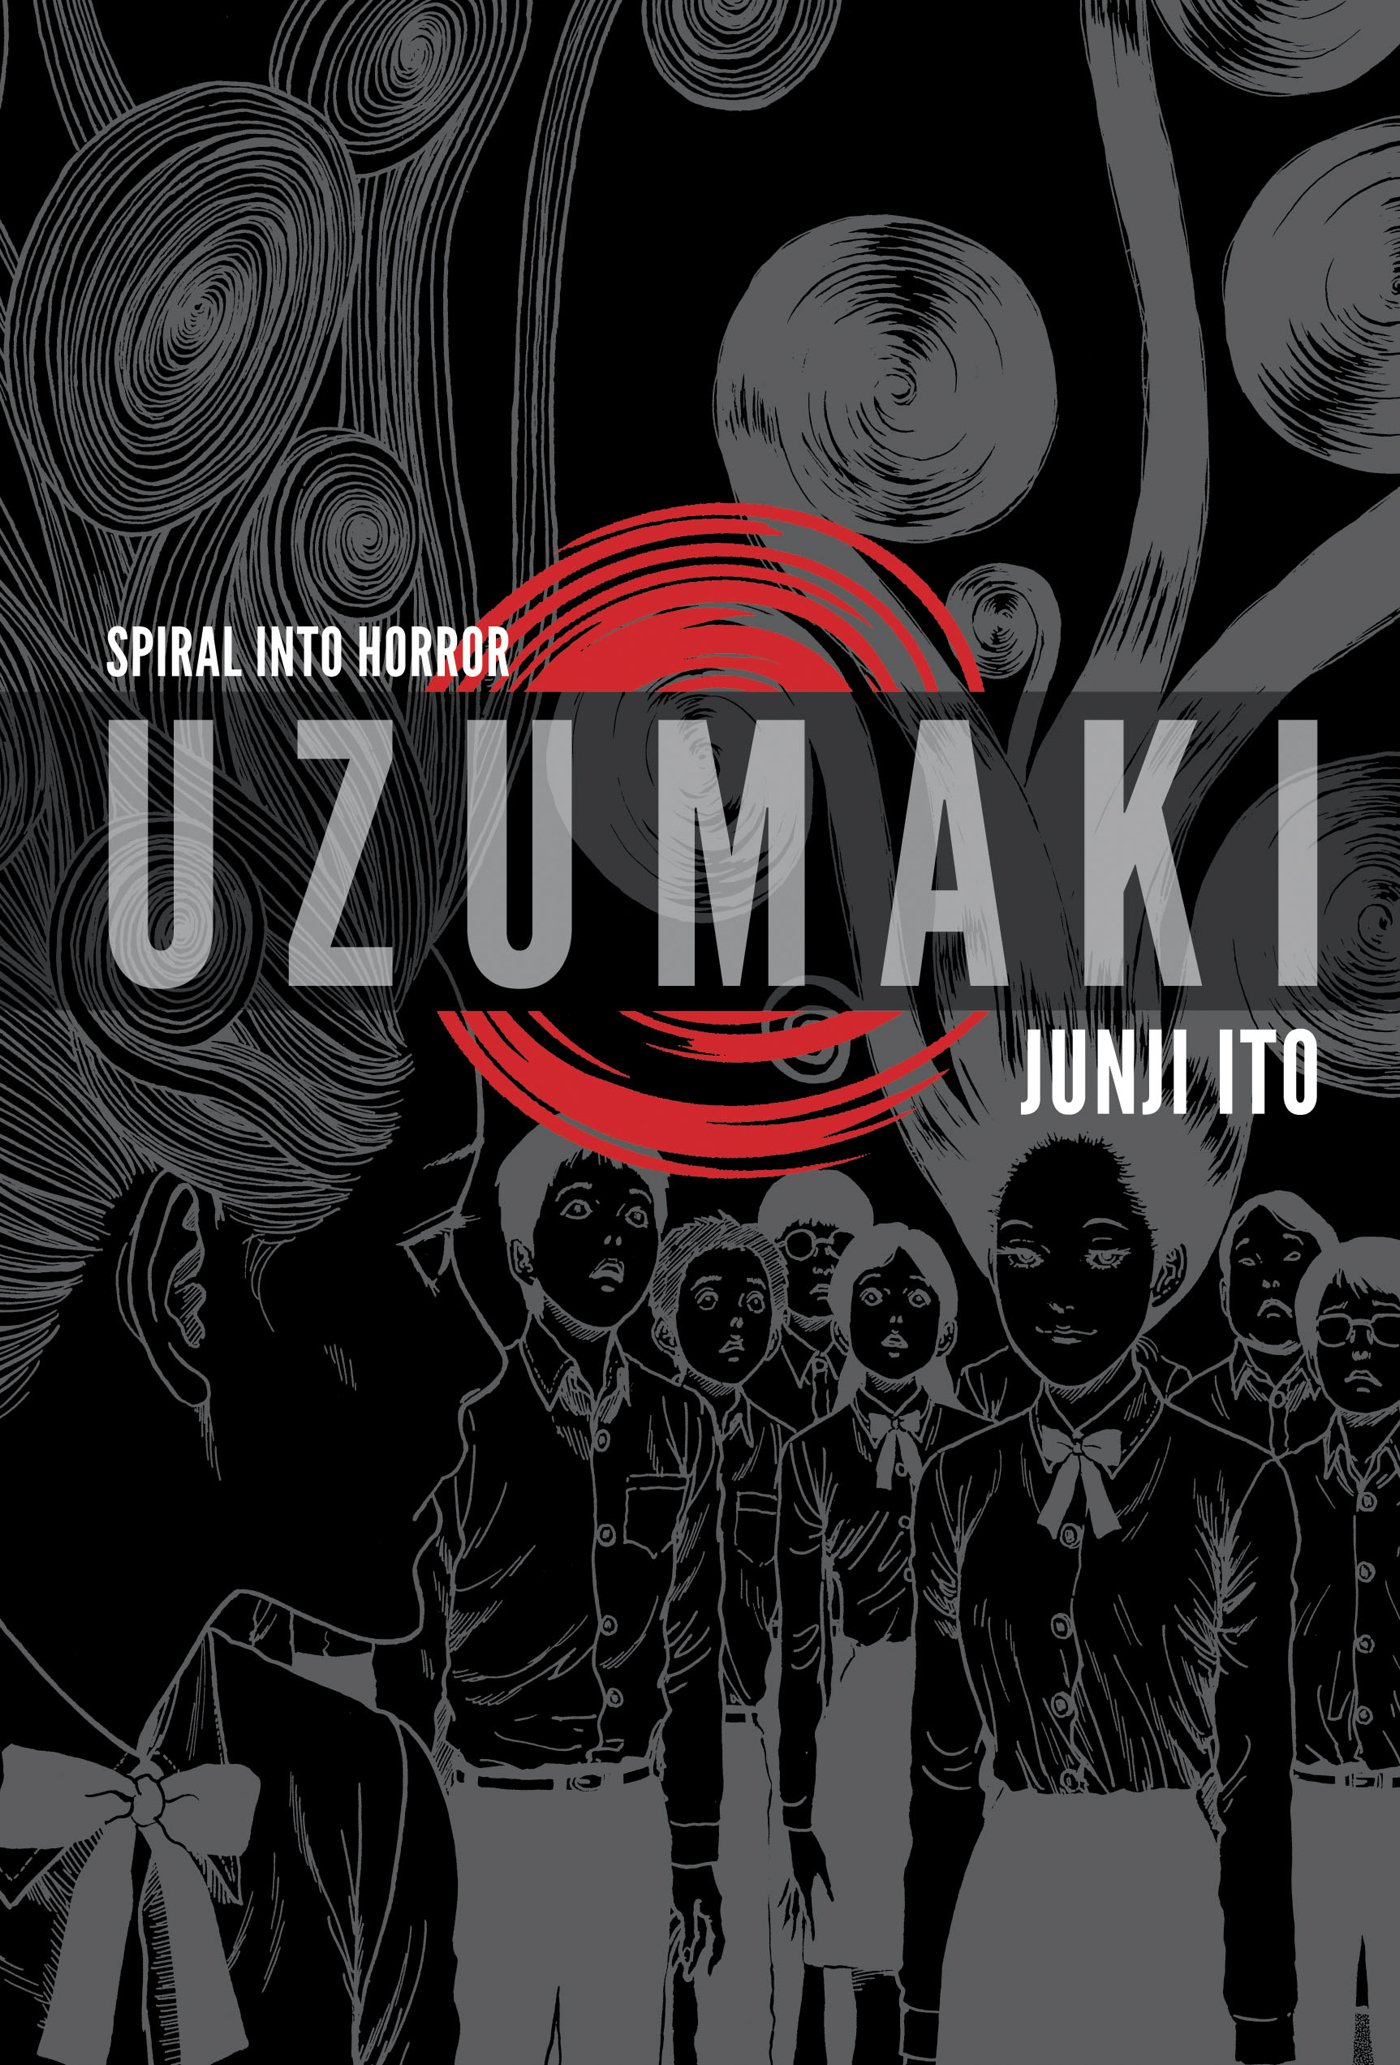 Top 5 anime kinh dị được mong chờ nhất năm 2021, Uzumaki của Junji Ito gây bão MXH bởi những hình ảnh kinh hãi tột cùng - Ảnh 3.